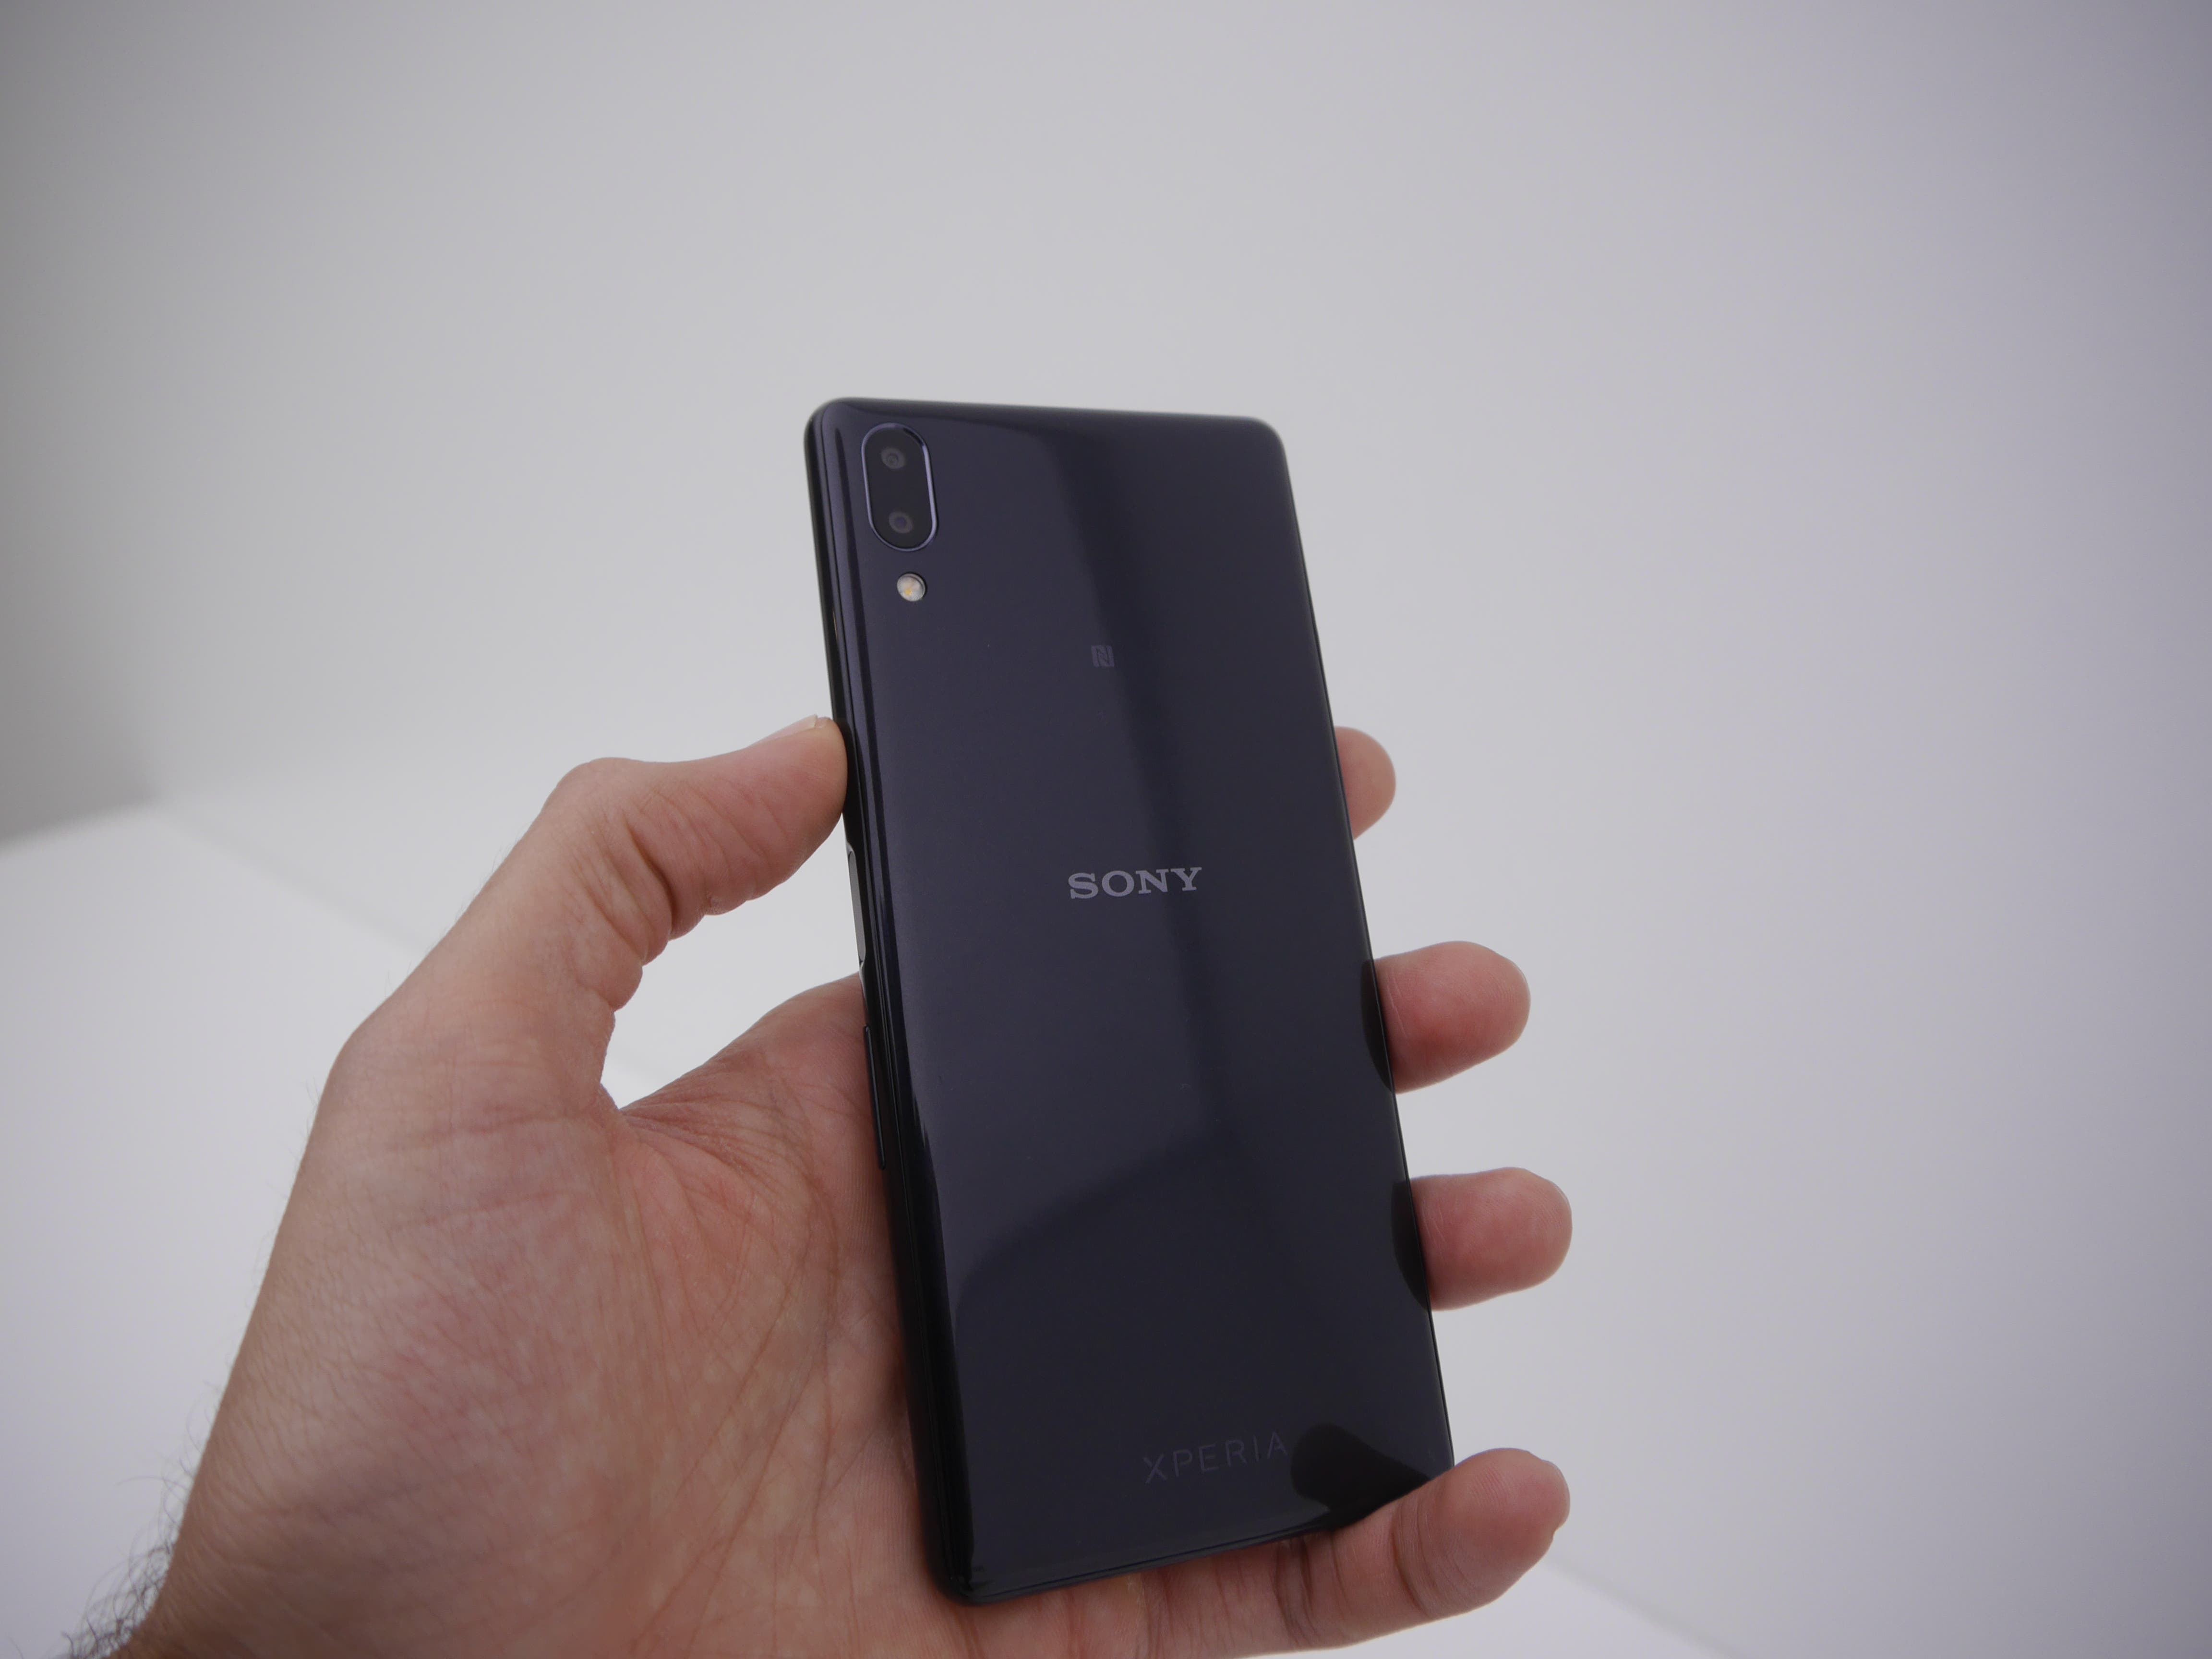 Sony Xperia L3 21:9 smartphone